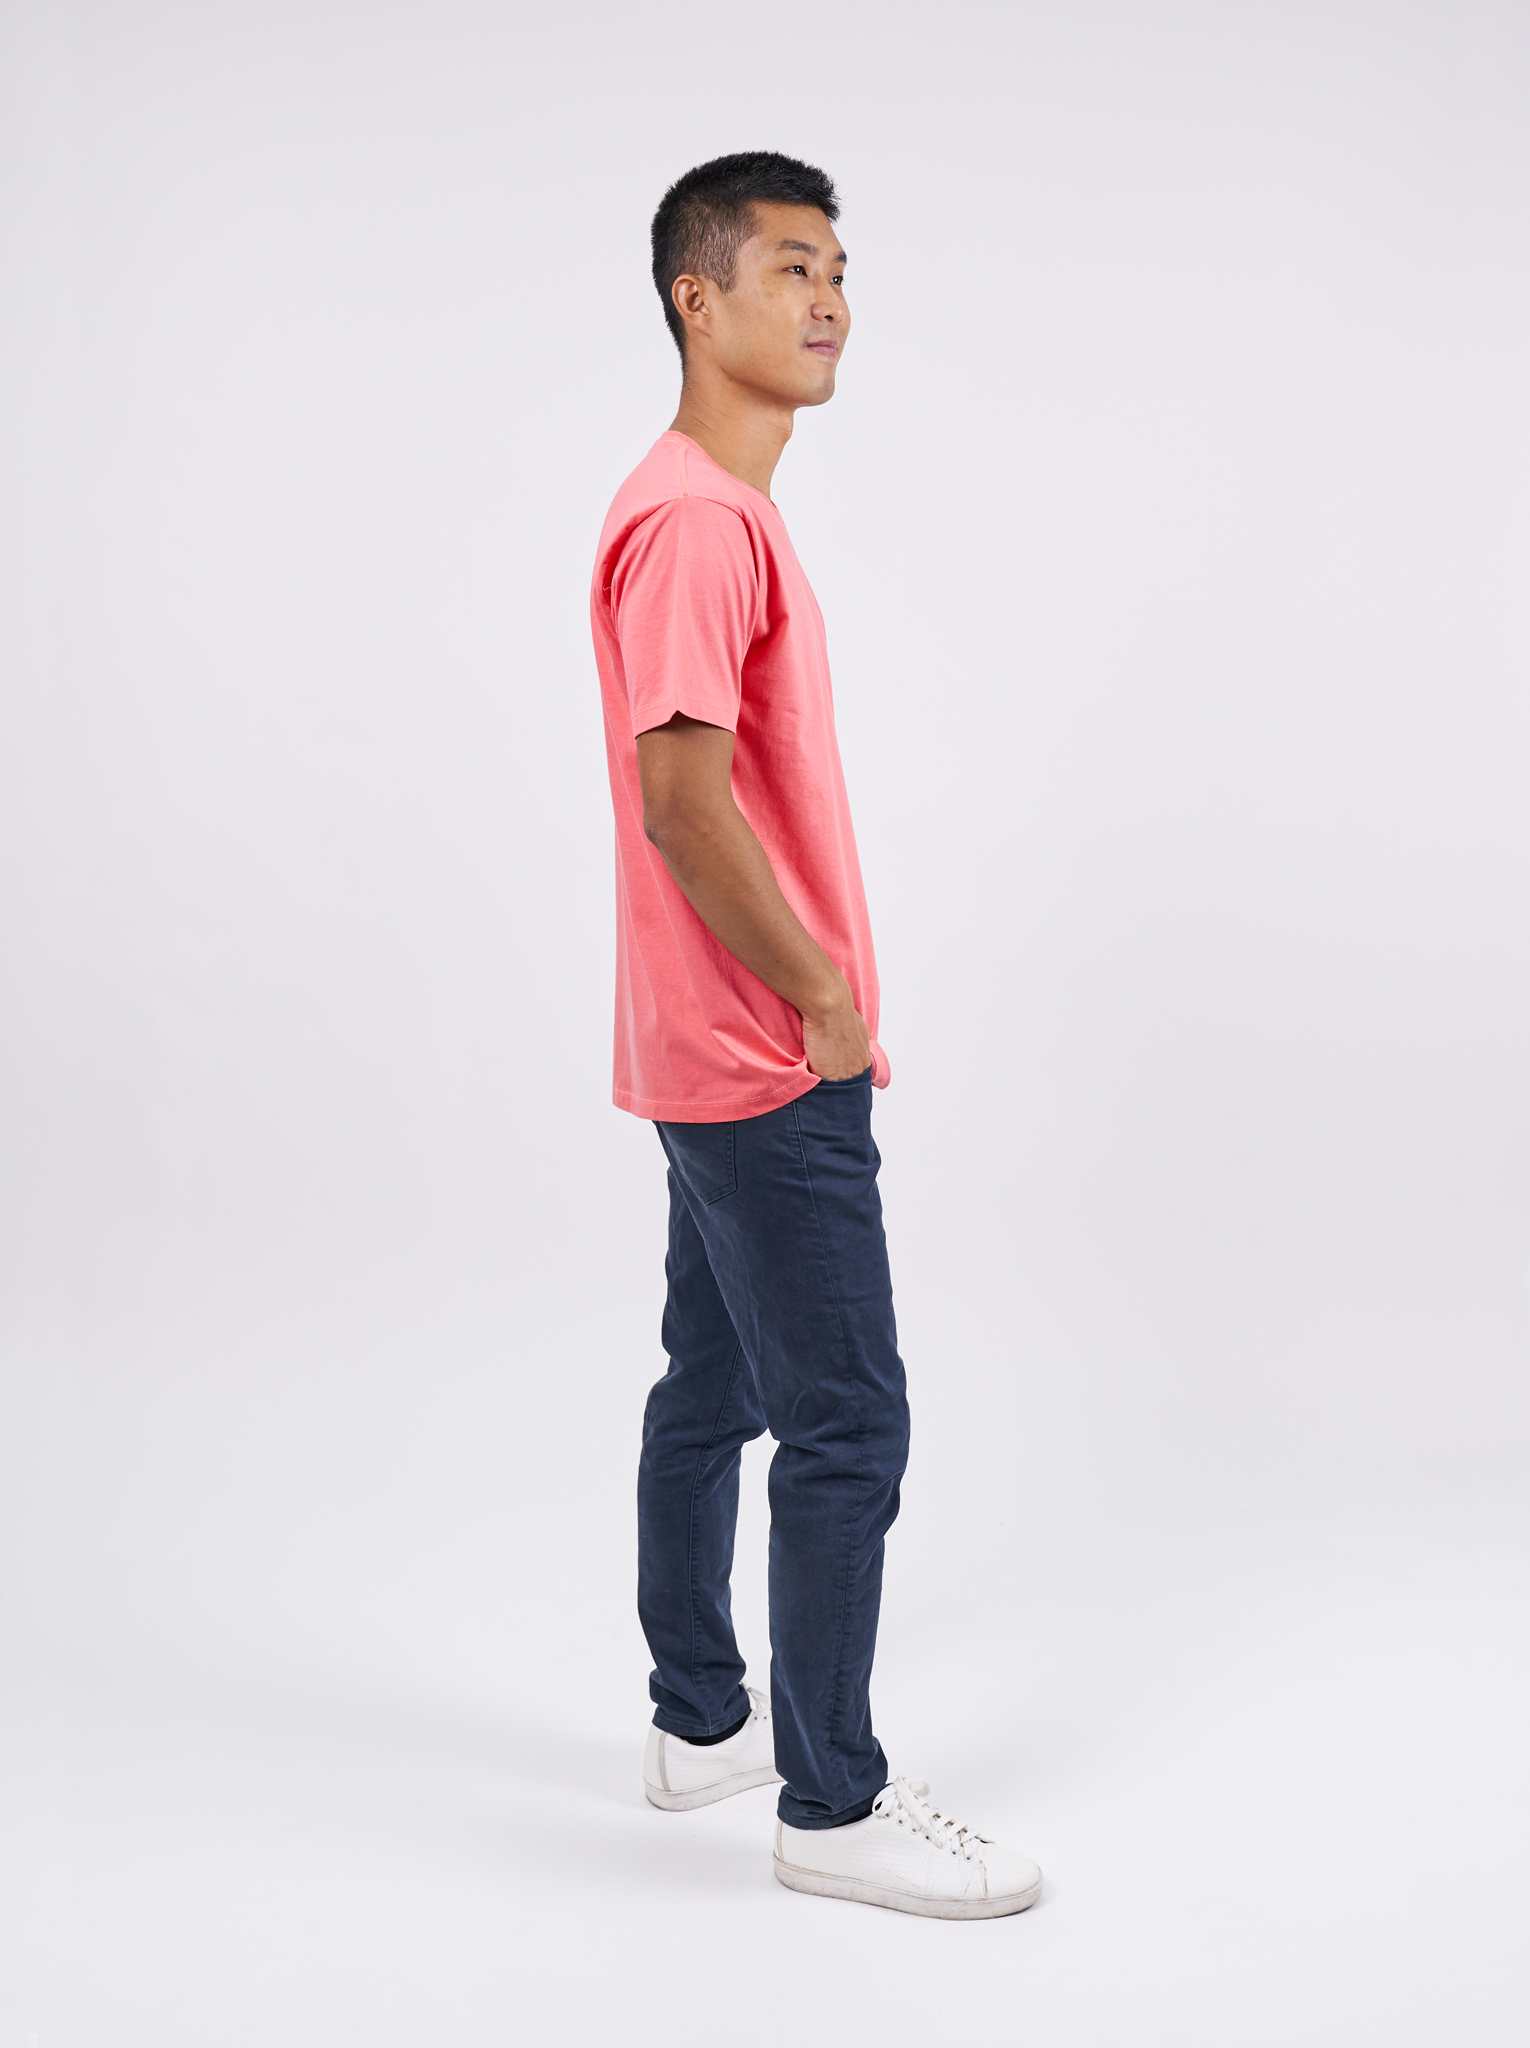 T-Shirt เสื้อยืด (Pink, สีชมพู)(Unisex)